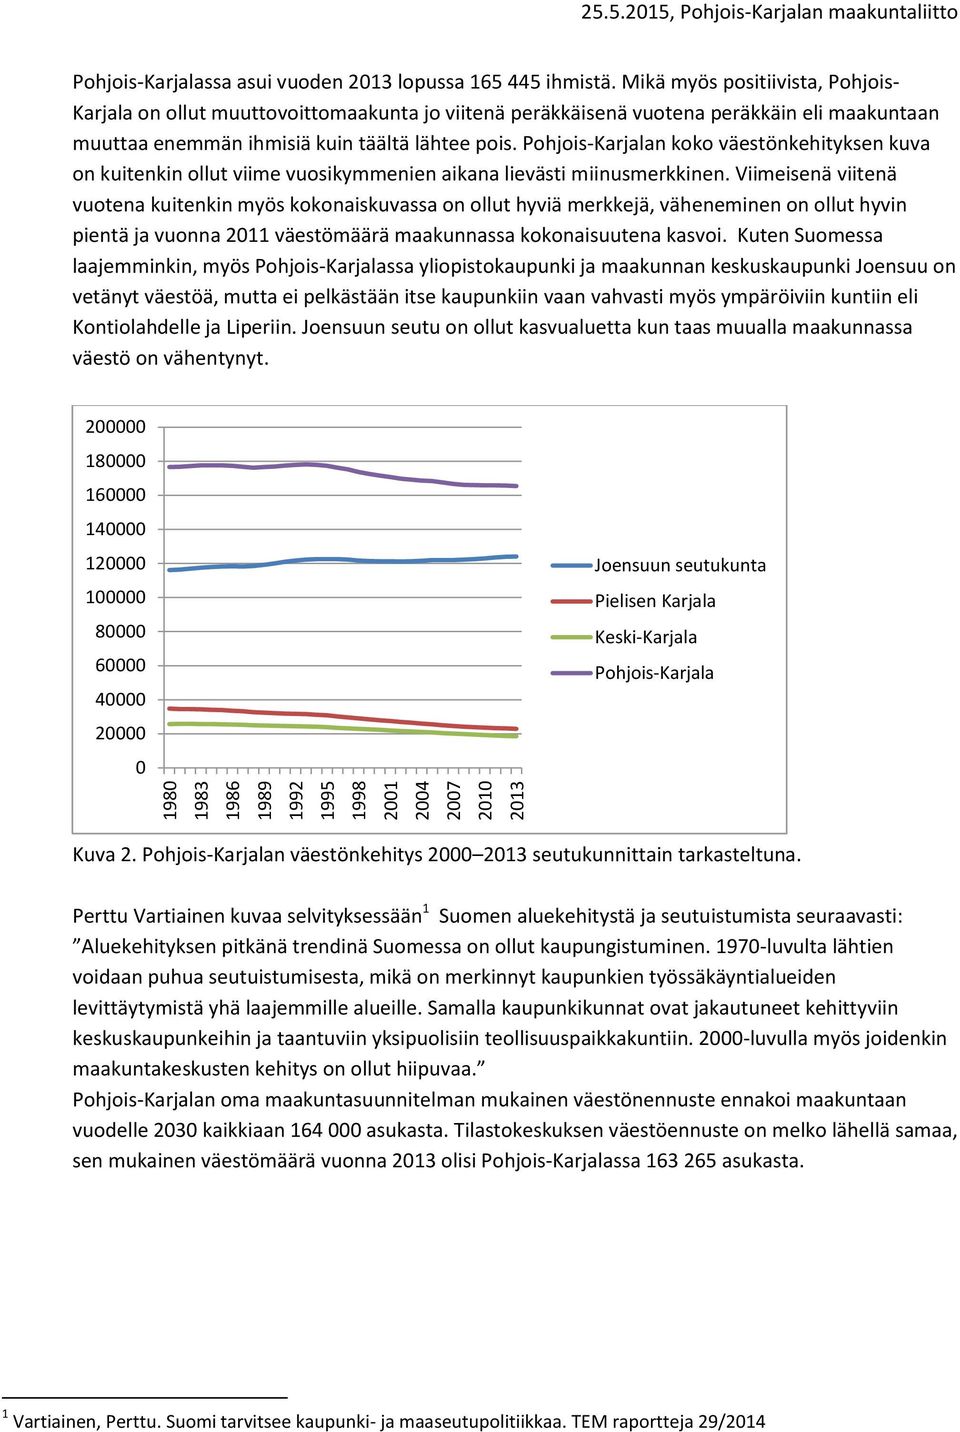 Pohjois-Karjalan koko väestönkehityksen kuva on kuitenkin ollut viime vuosikymmenien aikana lievästi miinusmerkkinen.